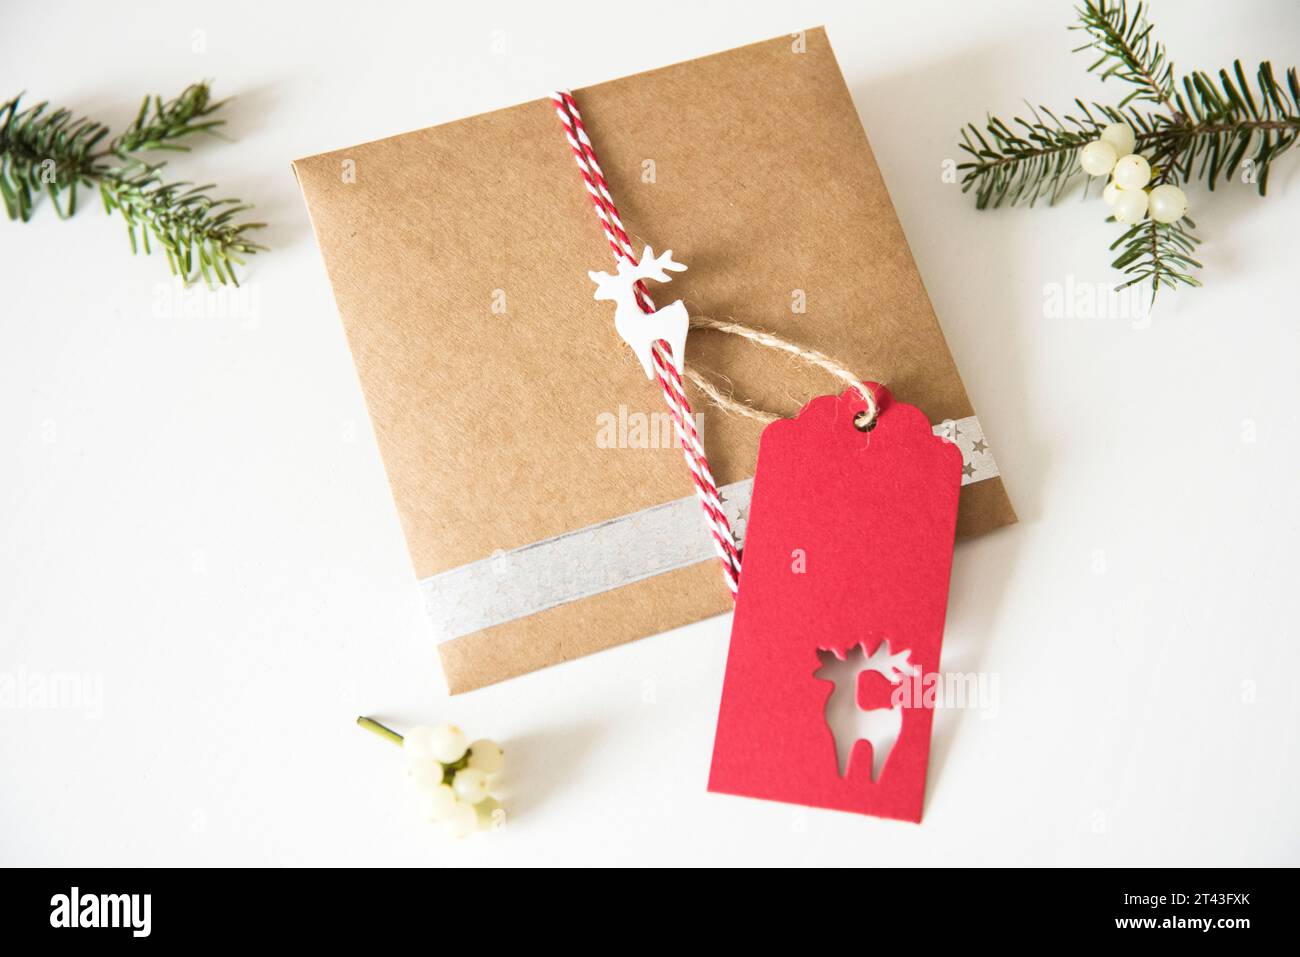 Confezione regalo rustica per le feste con carta artigianale, adornata da un'affascinante renna e rami profumati di abete, che catturano l'essenza della tradizione natalizia Foto Stock